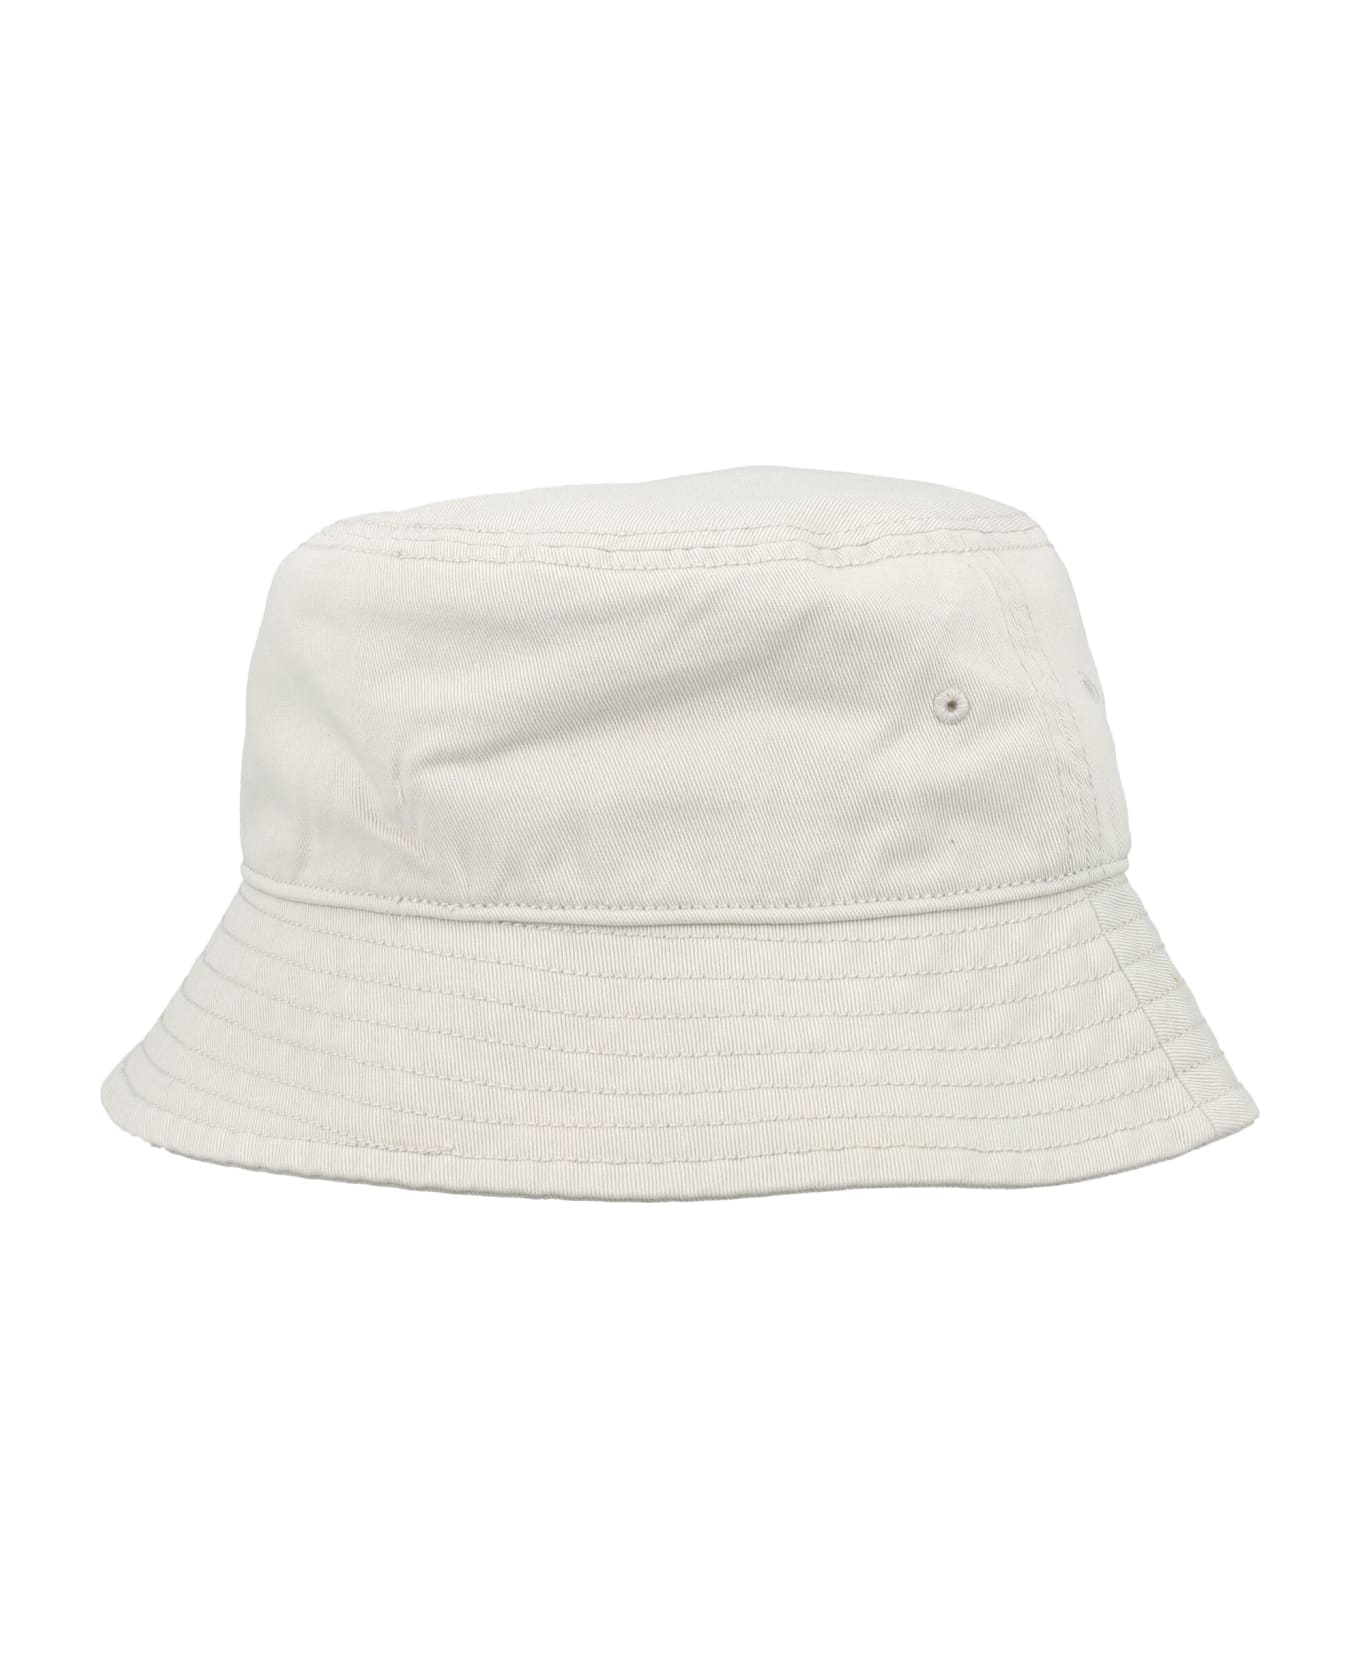 Y-3 Bucket Hat - WHITE